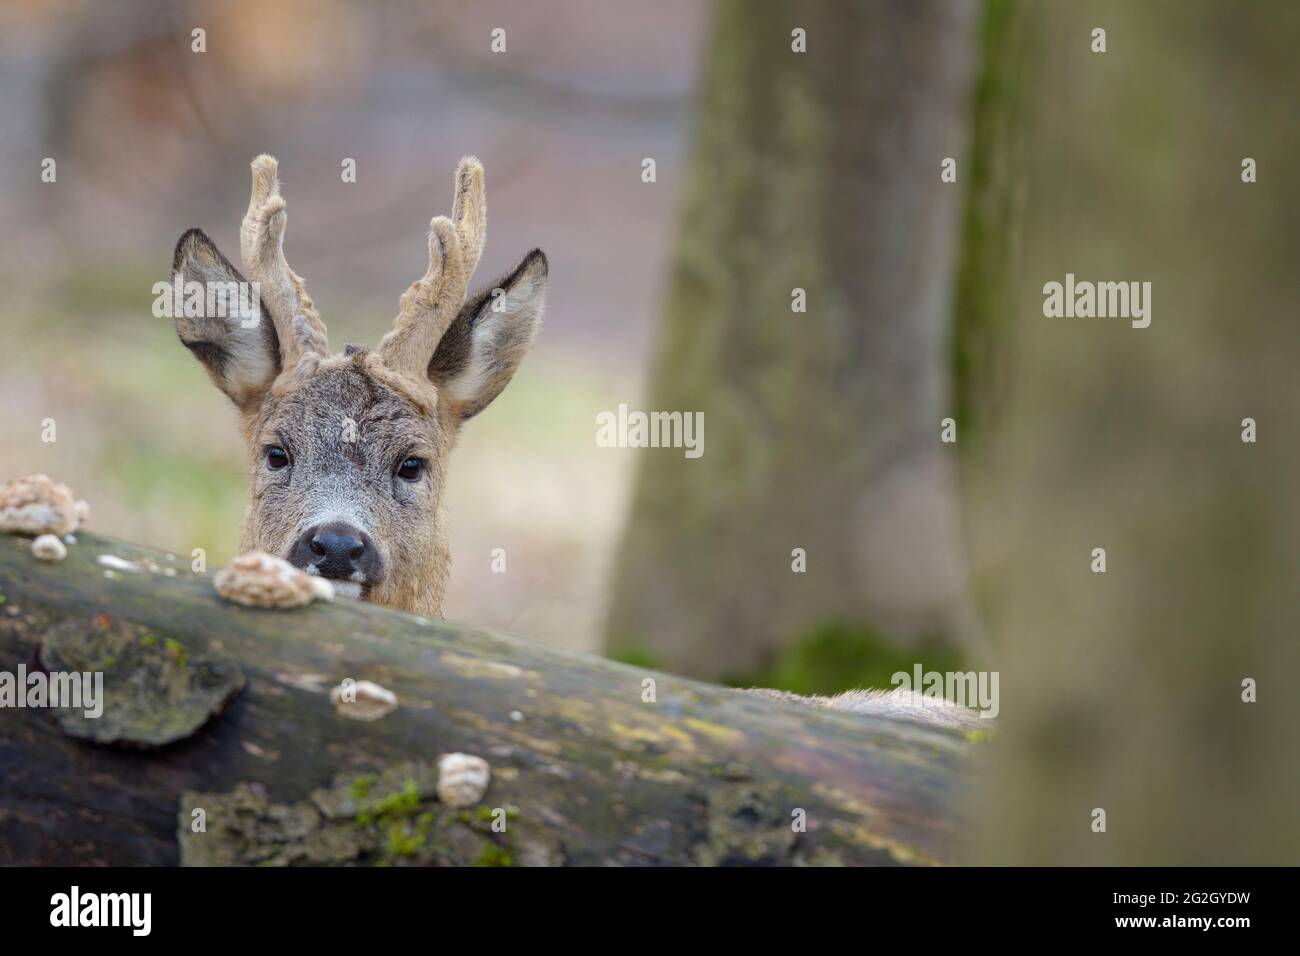 El ciervo de huevas en reposo (Capreolus capreolus) se apareaba de detrás de un tronco arbóreo, March, Hesse, Alemania Foto de stock